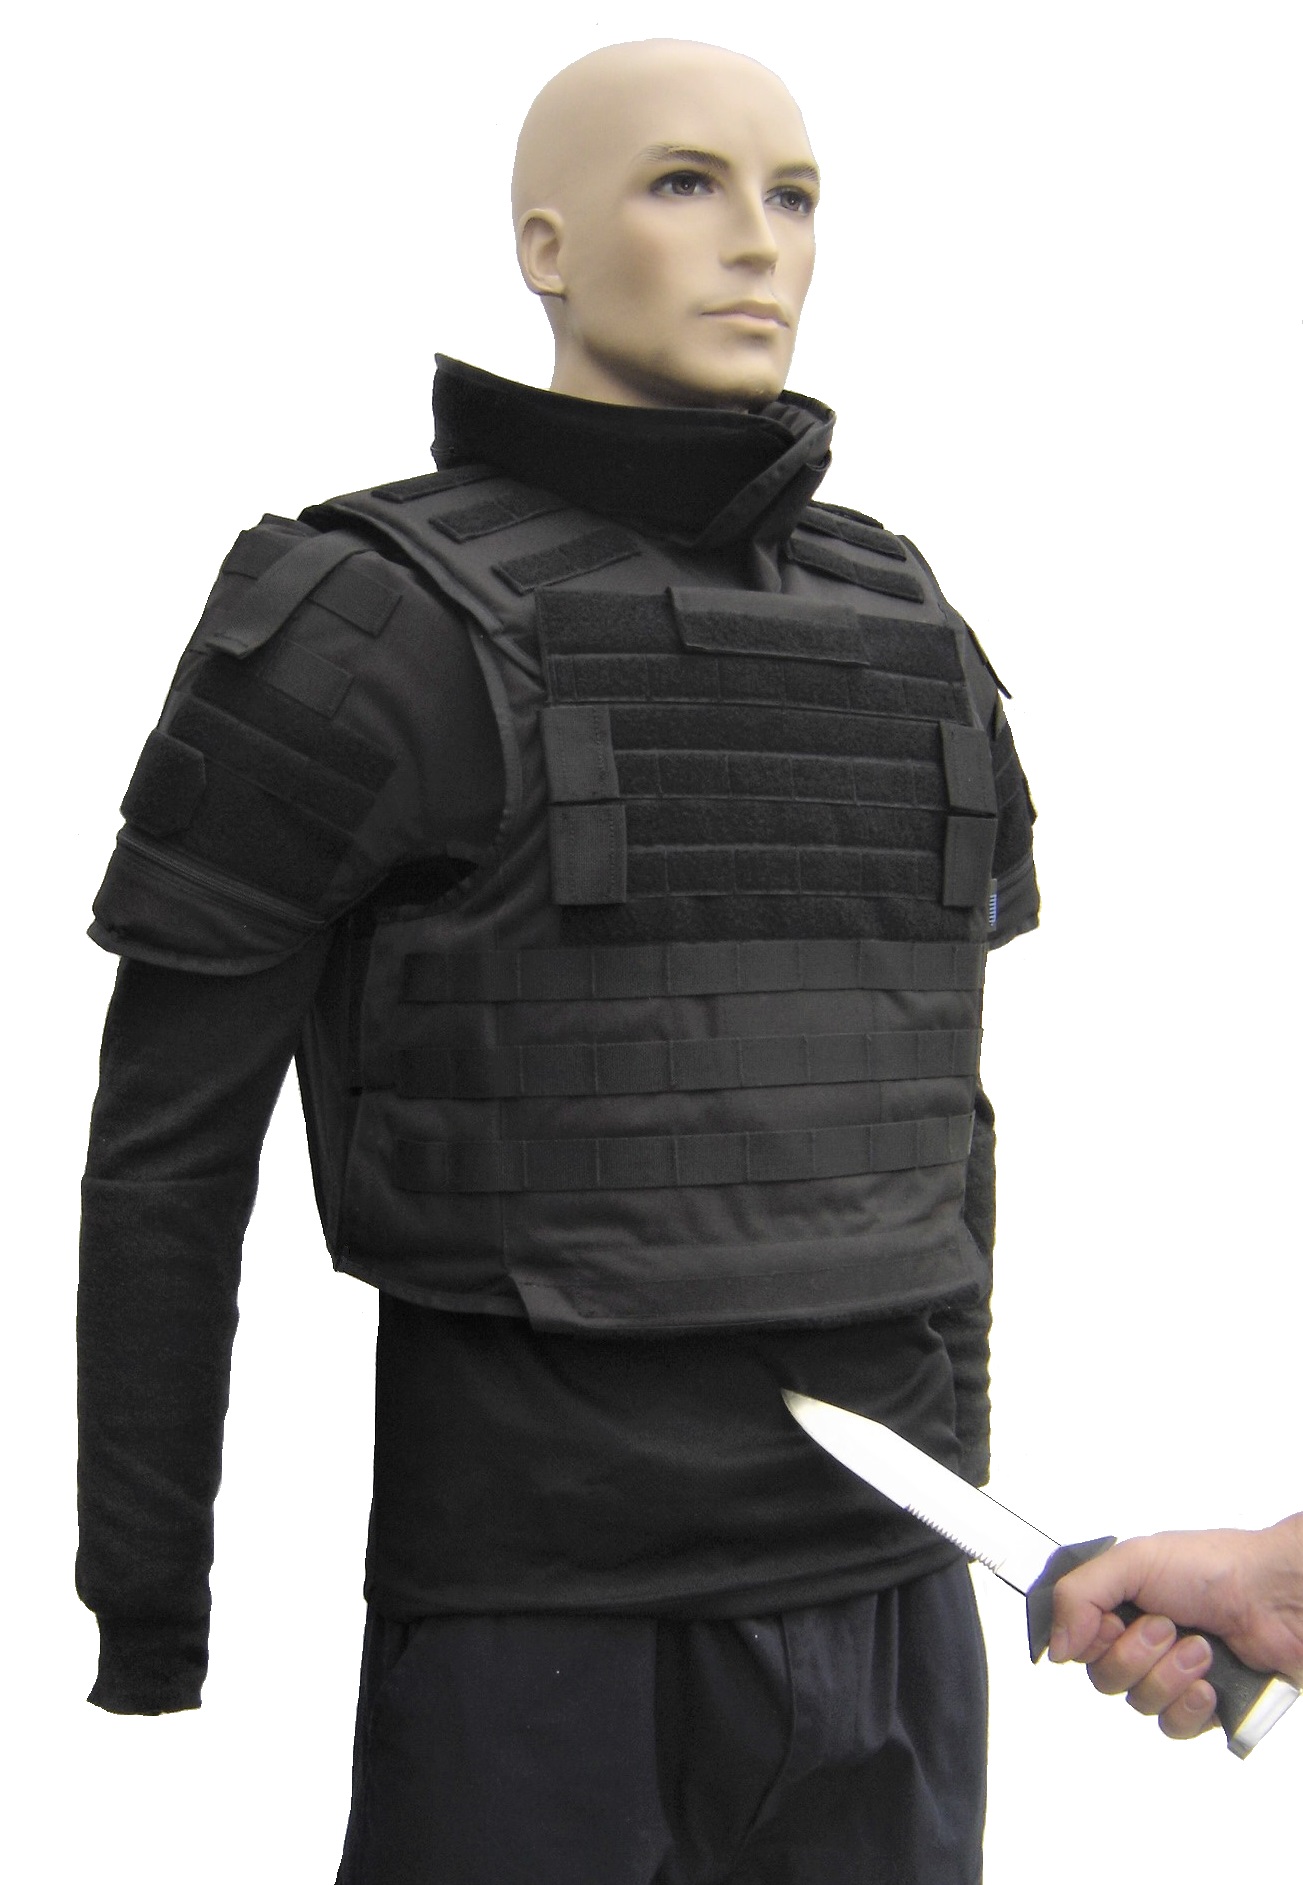 Eximius NIJ-3A (04) tactical bulletproof vest black